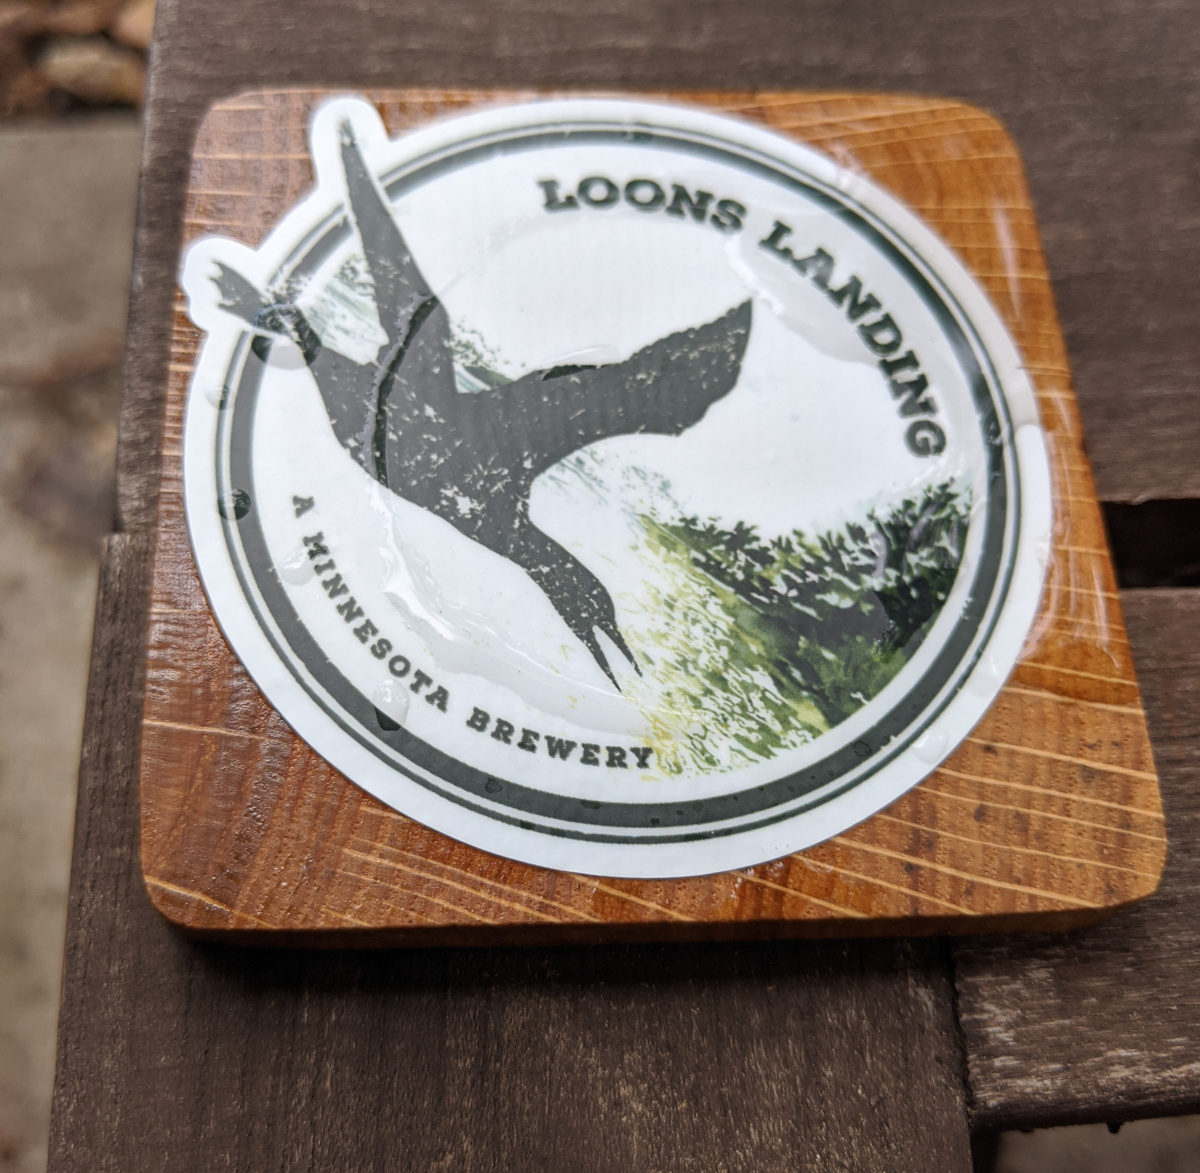 Loons Landing Brewery